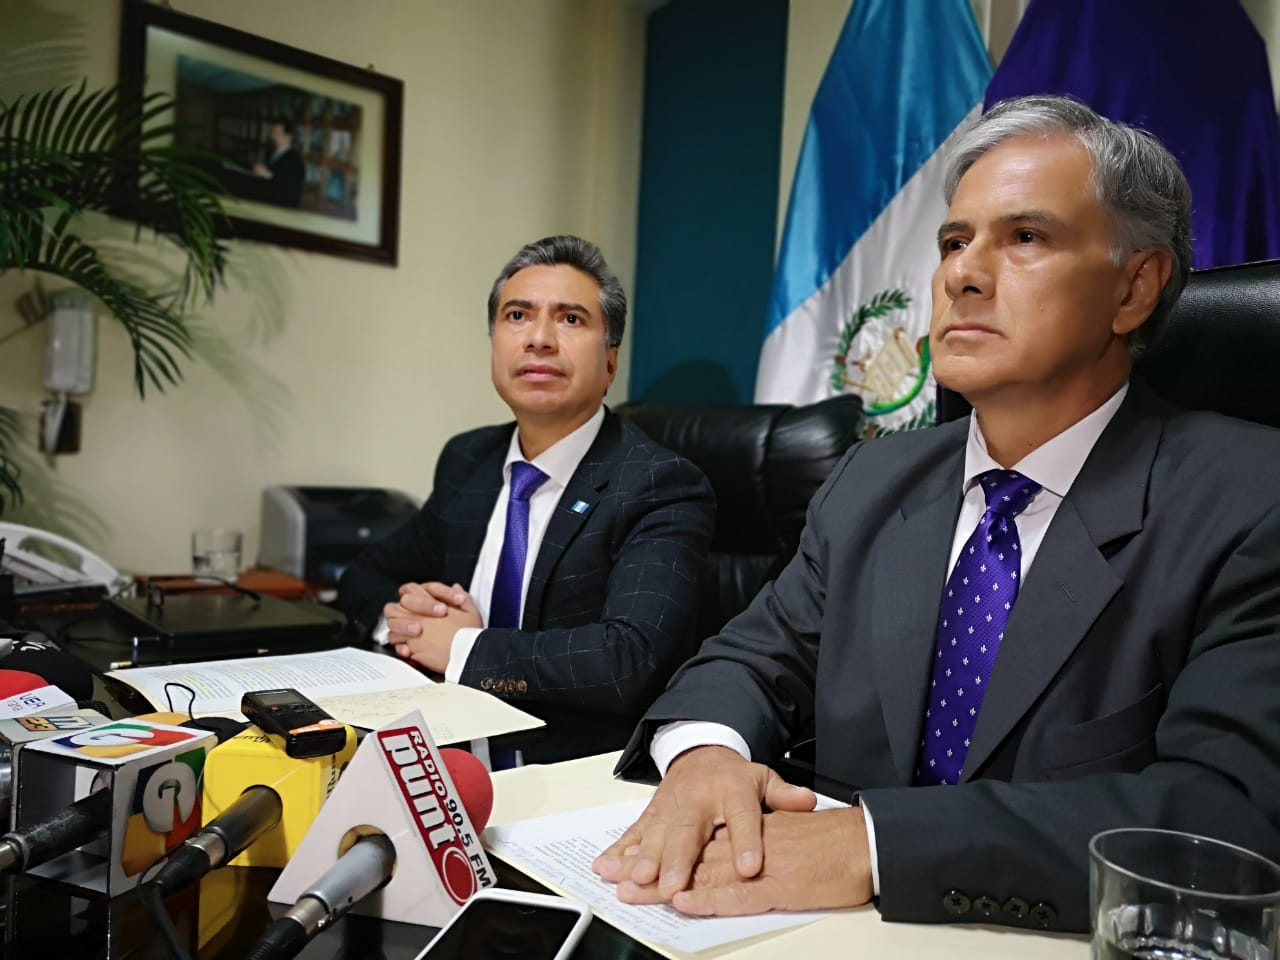 El binomio presidencial de Todos, Fredy Cabrera y Ricardo Sagastume, en conferencia de prensa. (Foto Prensa Libre: La Red)